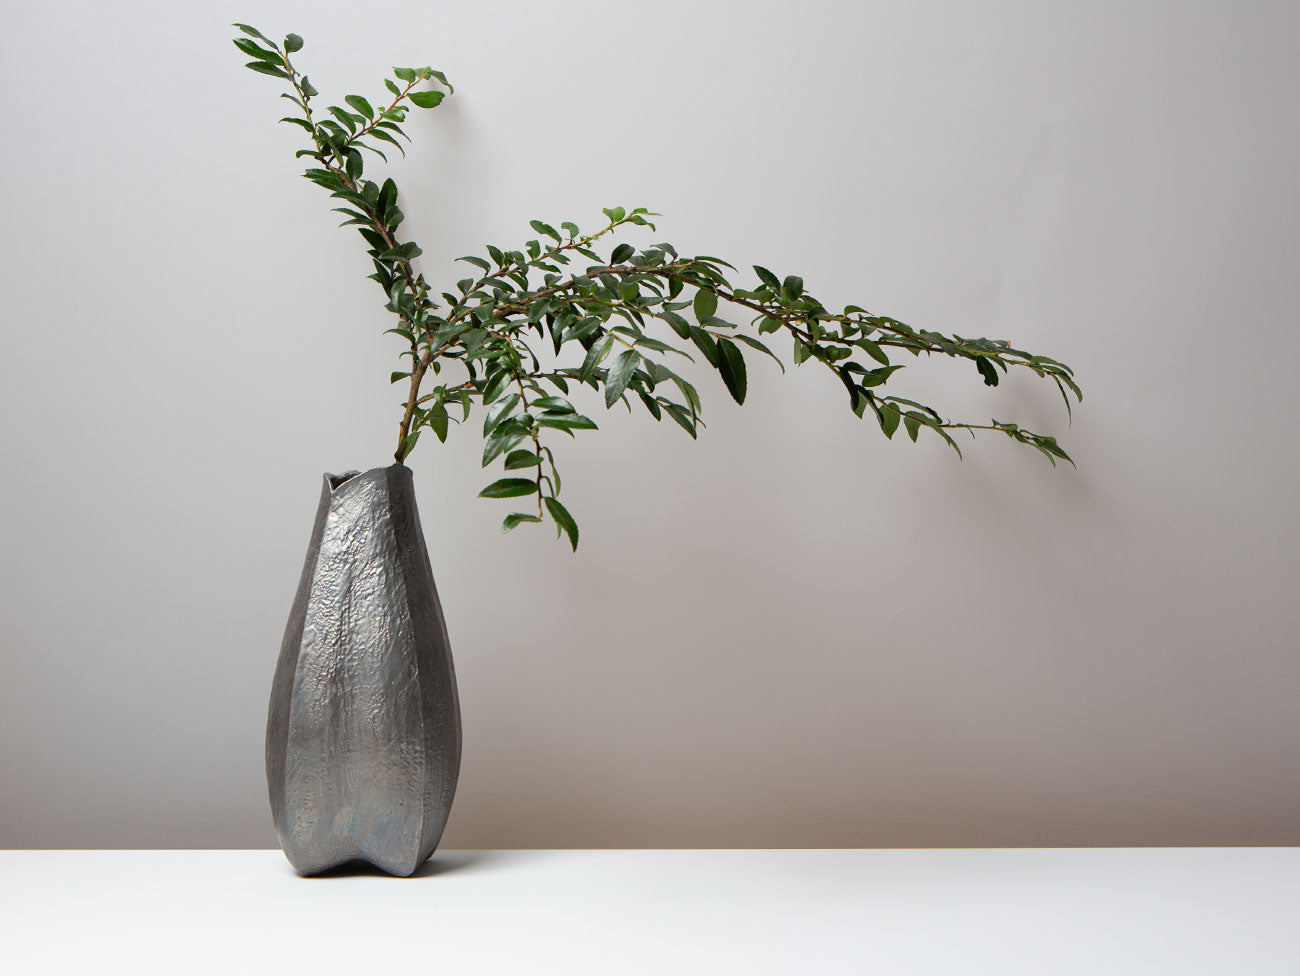 Lotus Vase in Pewter Tone. Wang Wen De.